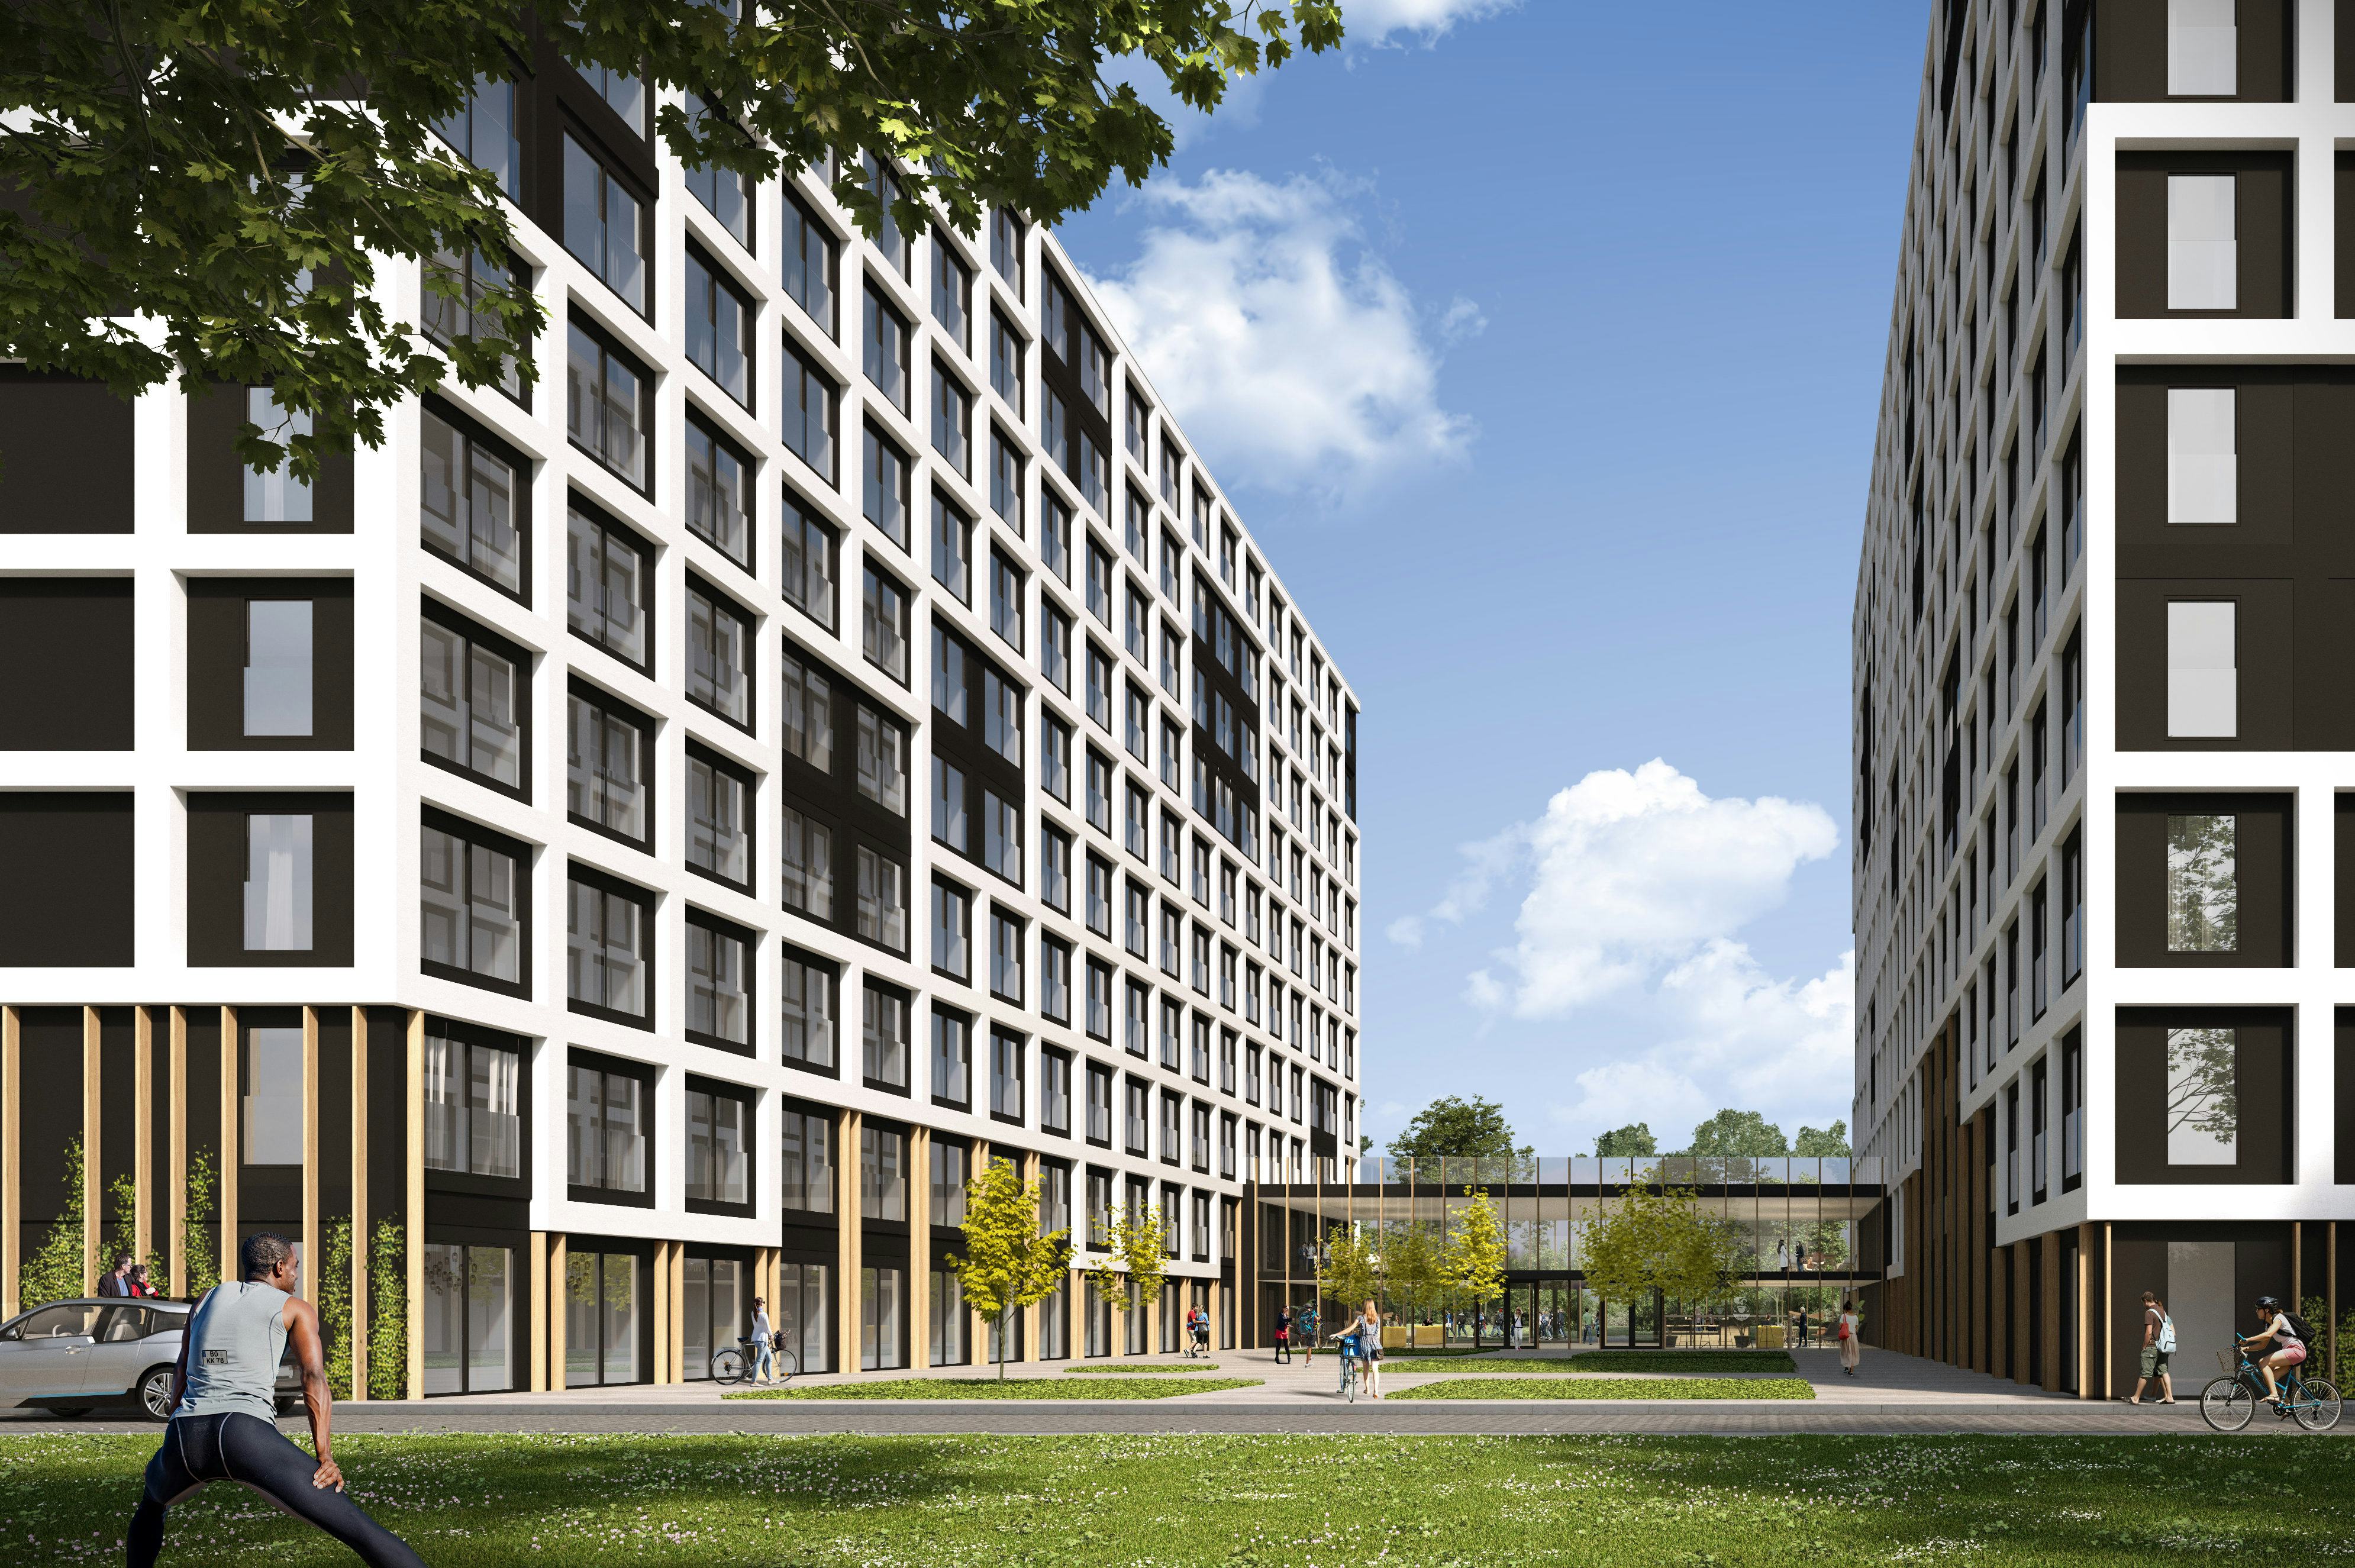 Impressie van de micro-appartementen die Jan Snel voor studenten gaat bouwen in het Duitse Bochum.